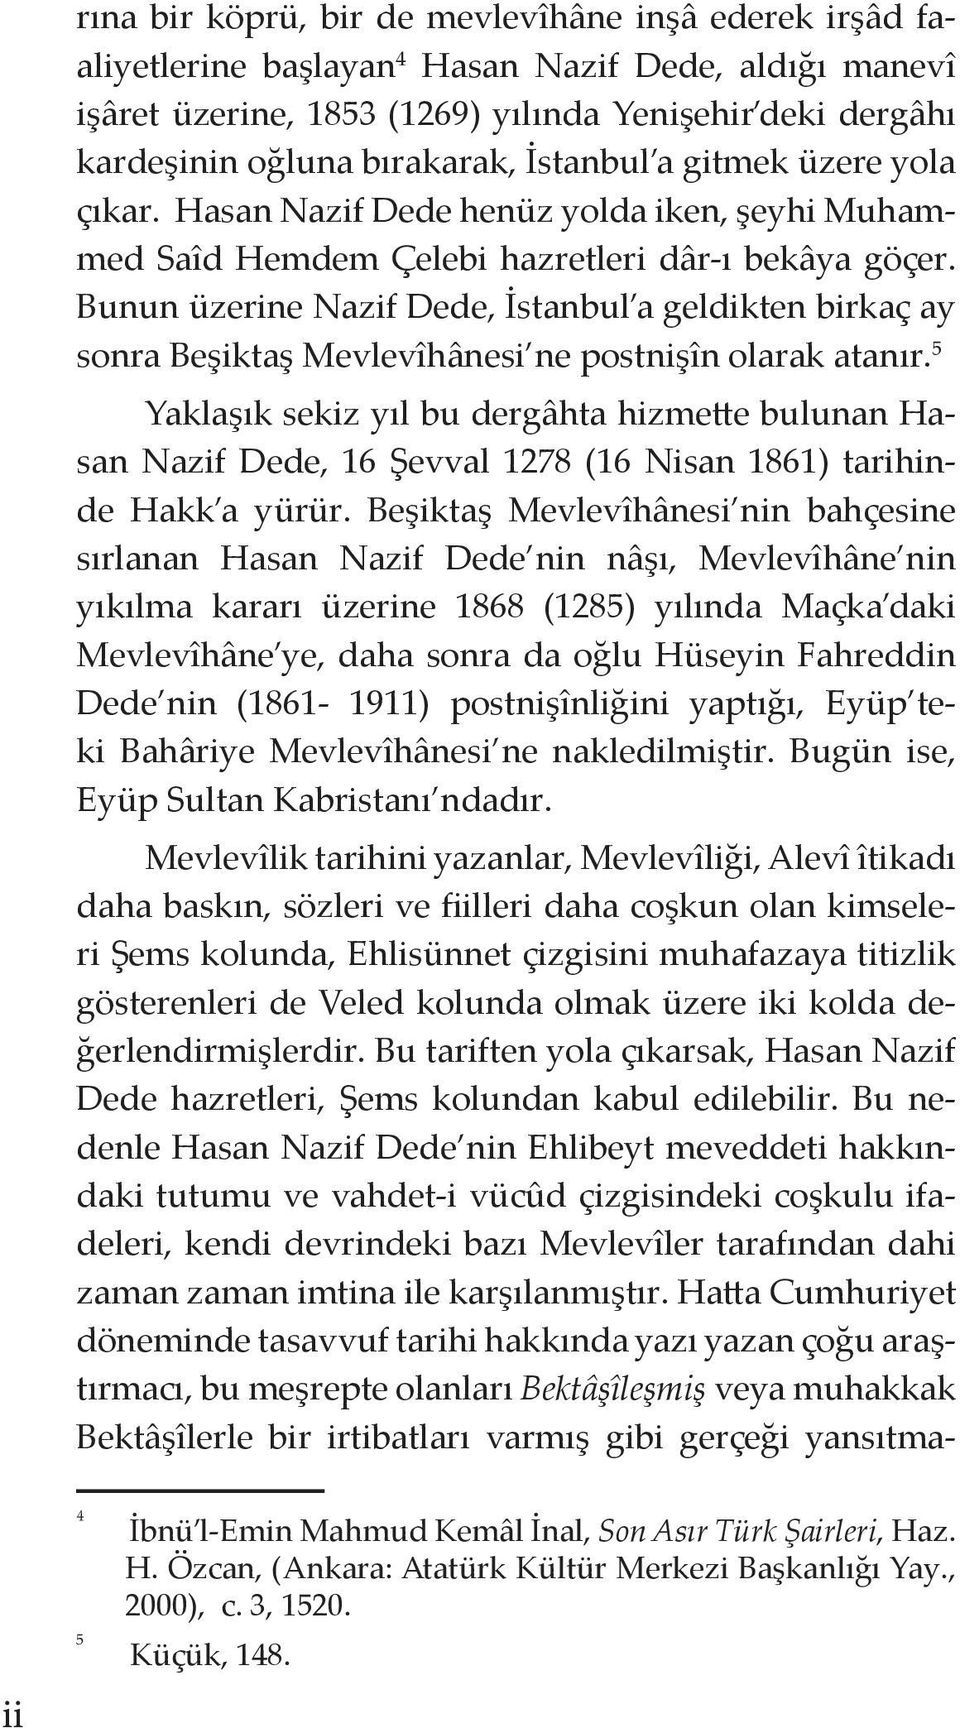 Bunun üzerine Nazif Dede, İstanbul a geldikten birkaç ay sonra Beşiktaş Mevlevîhânesi ne postnişîn olarak atanır.